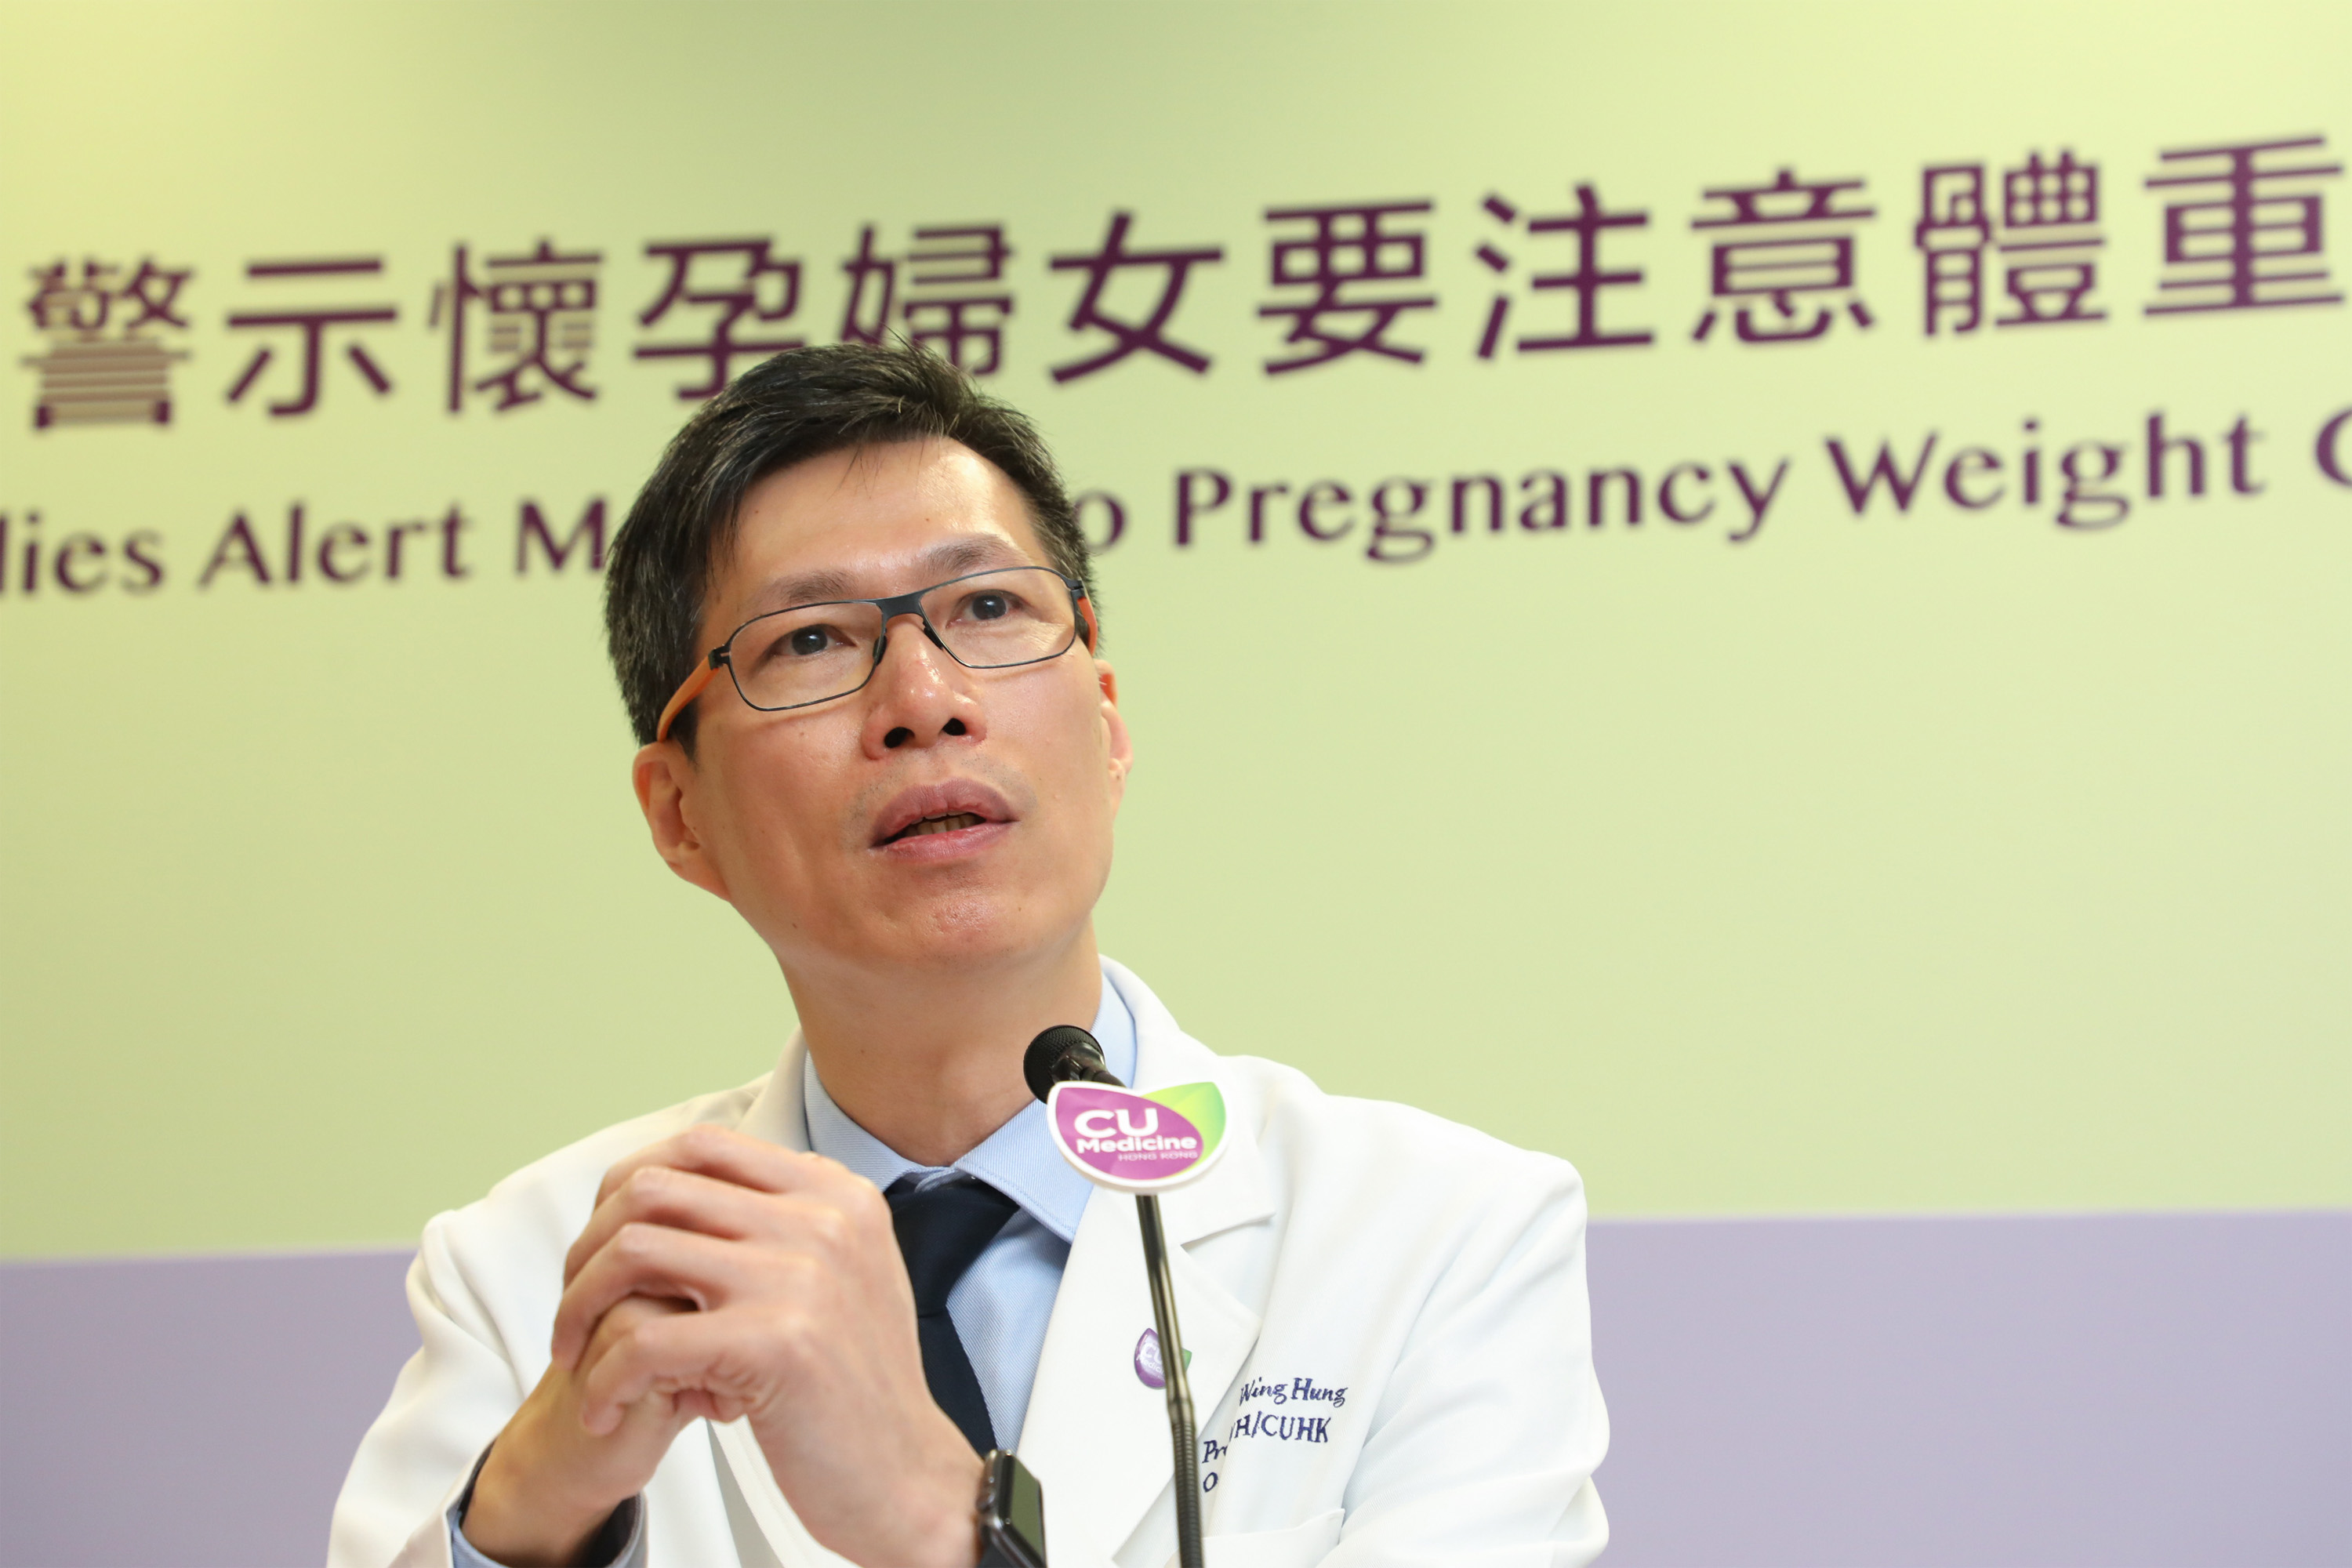 谭教授表示团队将继续研究「怀孕期体重增幅」和「妊娠糖尿病」对下一代於不同成长阶段的影响。